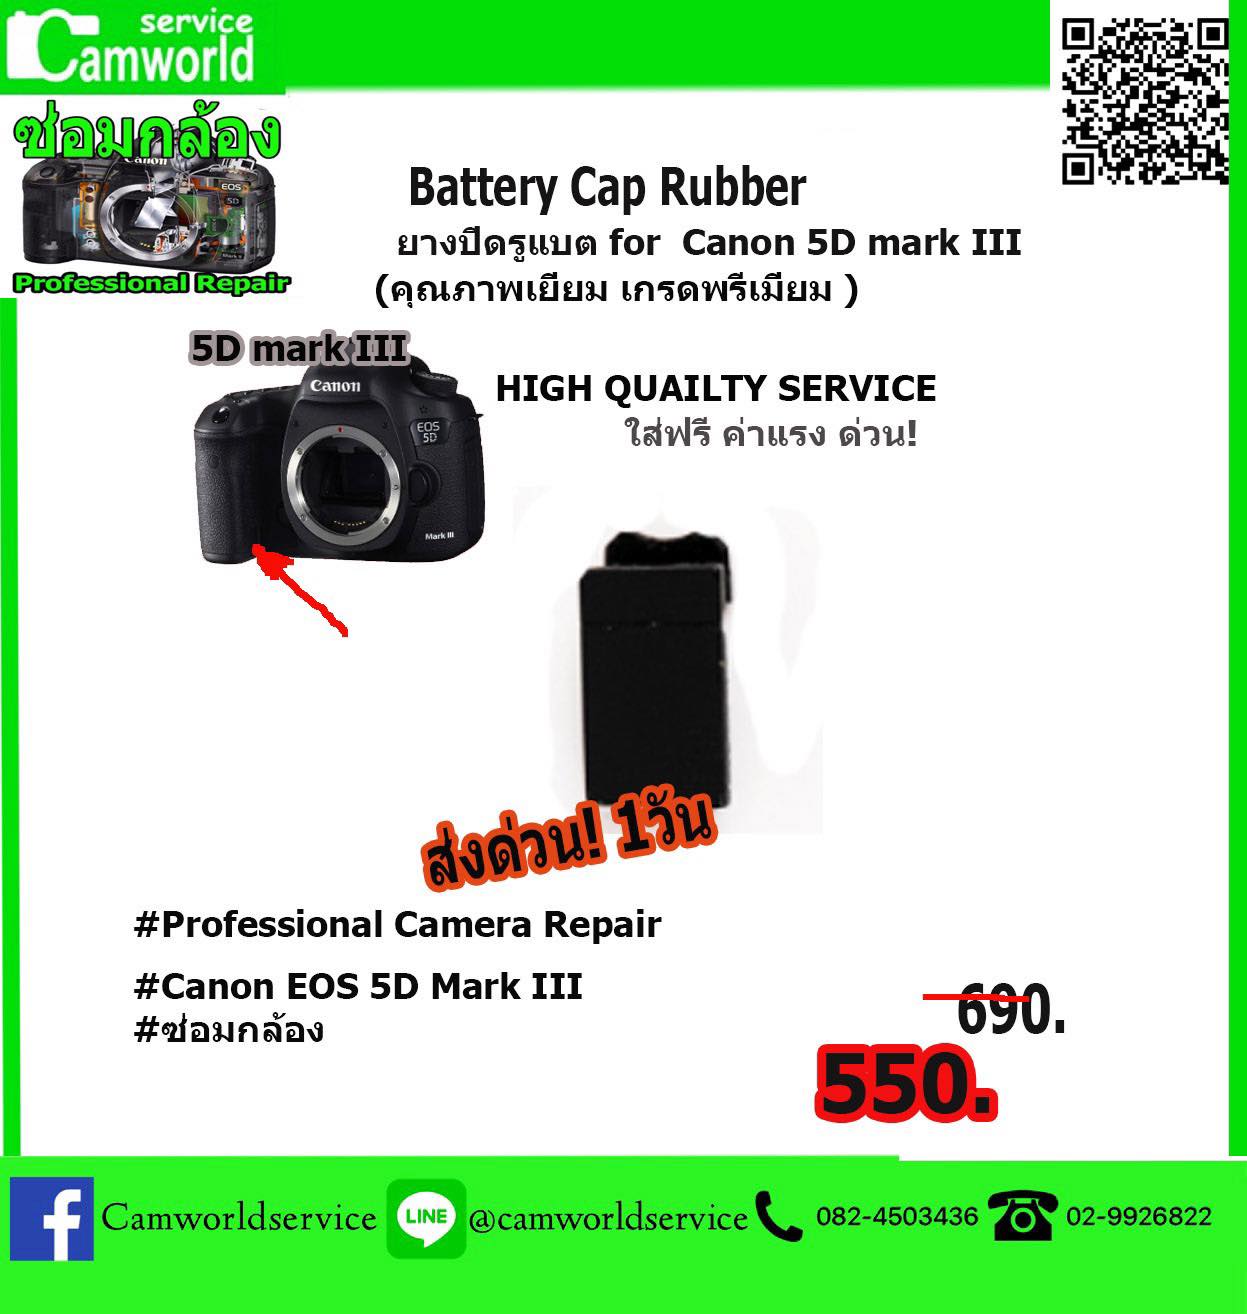 ยางปิดรูแบต For Canon EOS 5D Mark lll BATTERY CAP RUBBER  วัสดุอย่างดี คุณภาพเยี่ยม เกรดพรีเมี่ยม ค่าแรงใส่ให้ฟรี !!